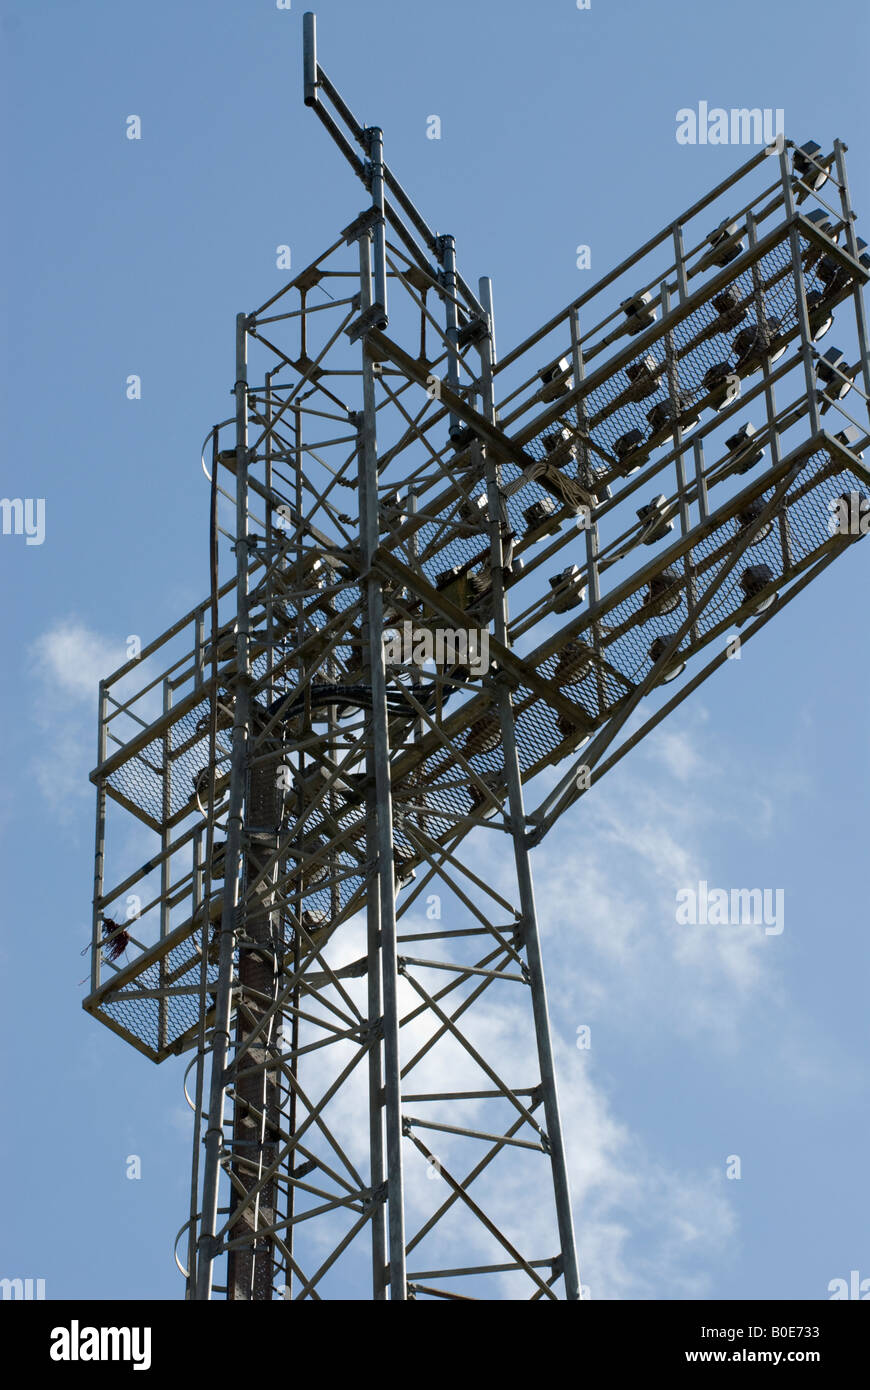 Football floodlight tower against deep blue sky Stock Photo